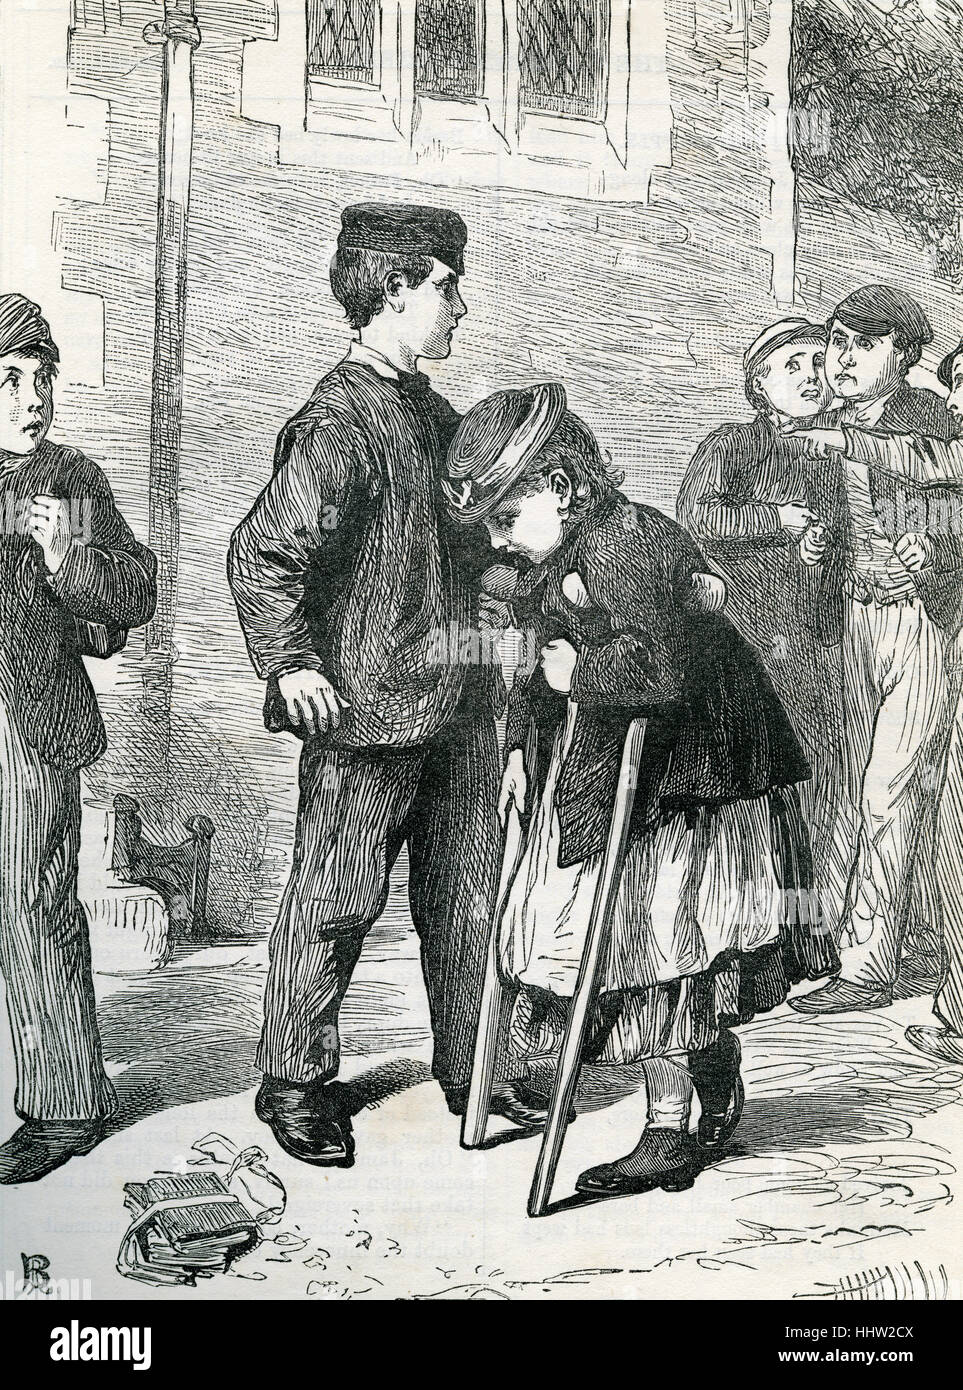 Ragazzo giovane protegge una bambina paralizzata su stampelle da un gruppo di spettatori accusatorio. Dopo l'illustrazione da 'I bambini amico", marzo 1869. Victorian racconto morale. Foto Stock